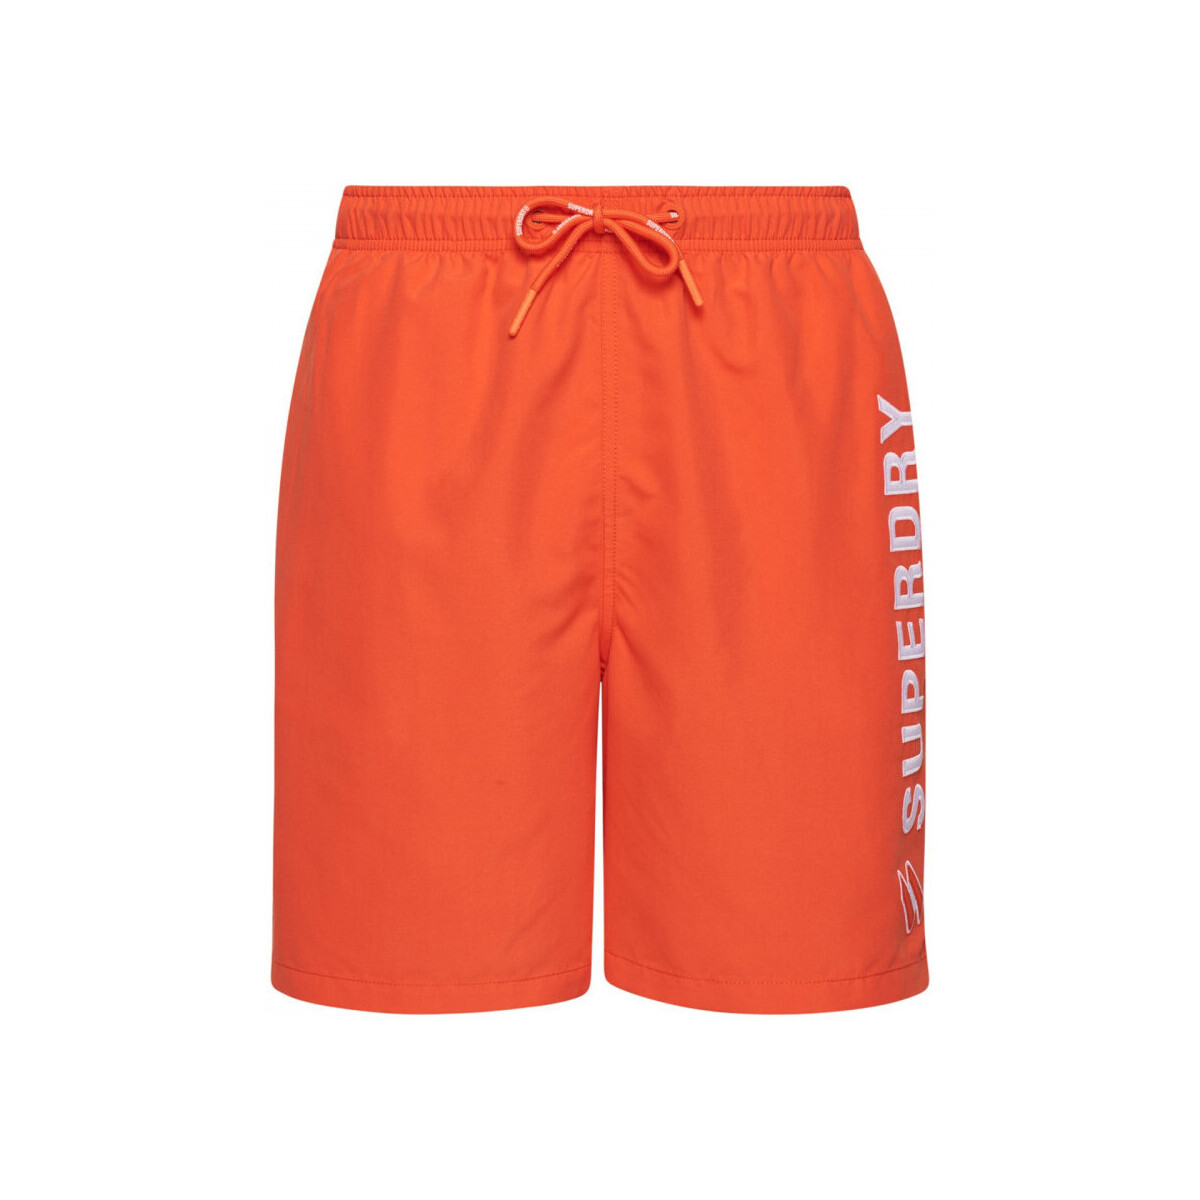 Odjeća Muškarci
 Kupaći kostimi / Kupaće gaće Superdry Code applque 19inch Narančasta